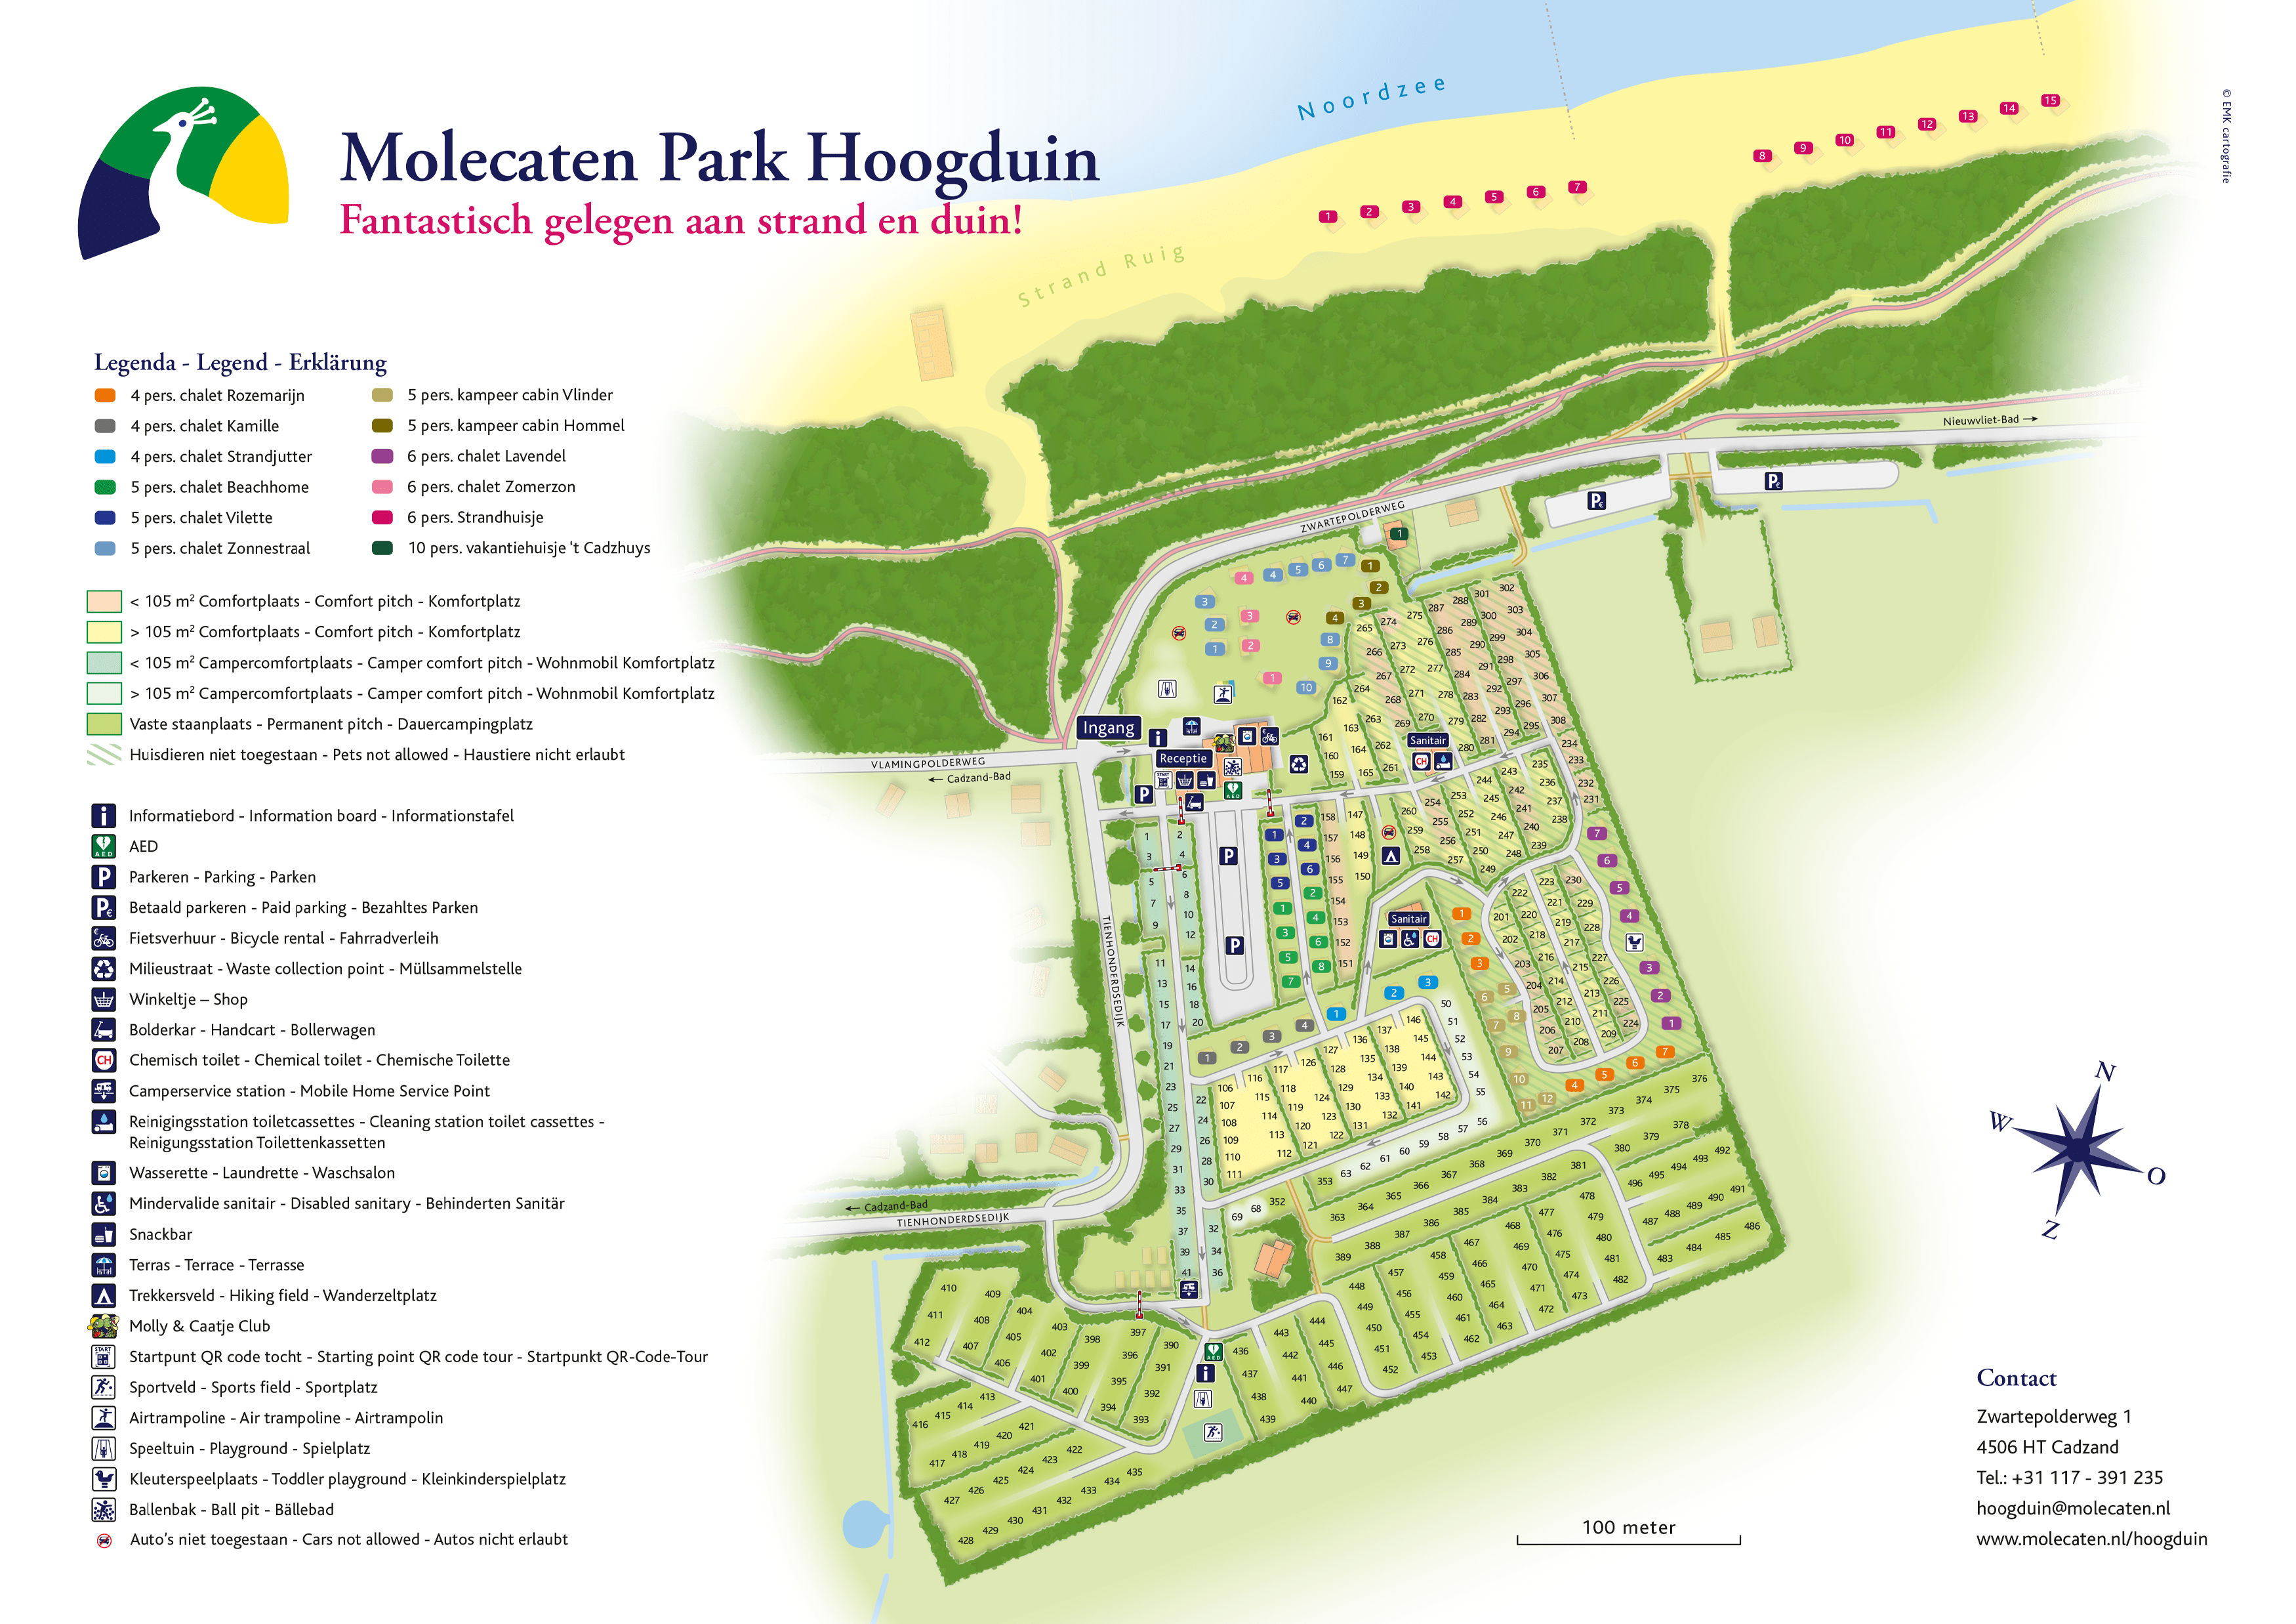 Molecaten Park Hoogduin accommodation.parkmap.alttext